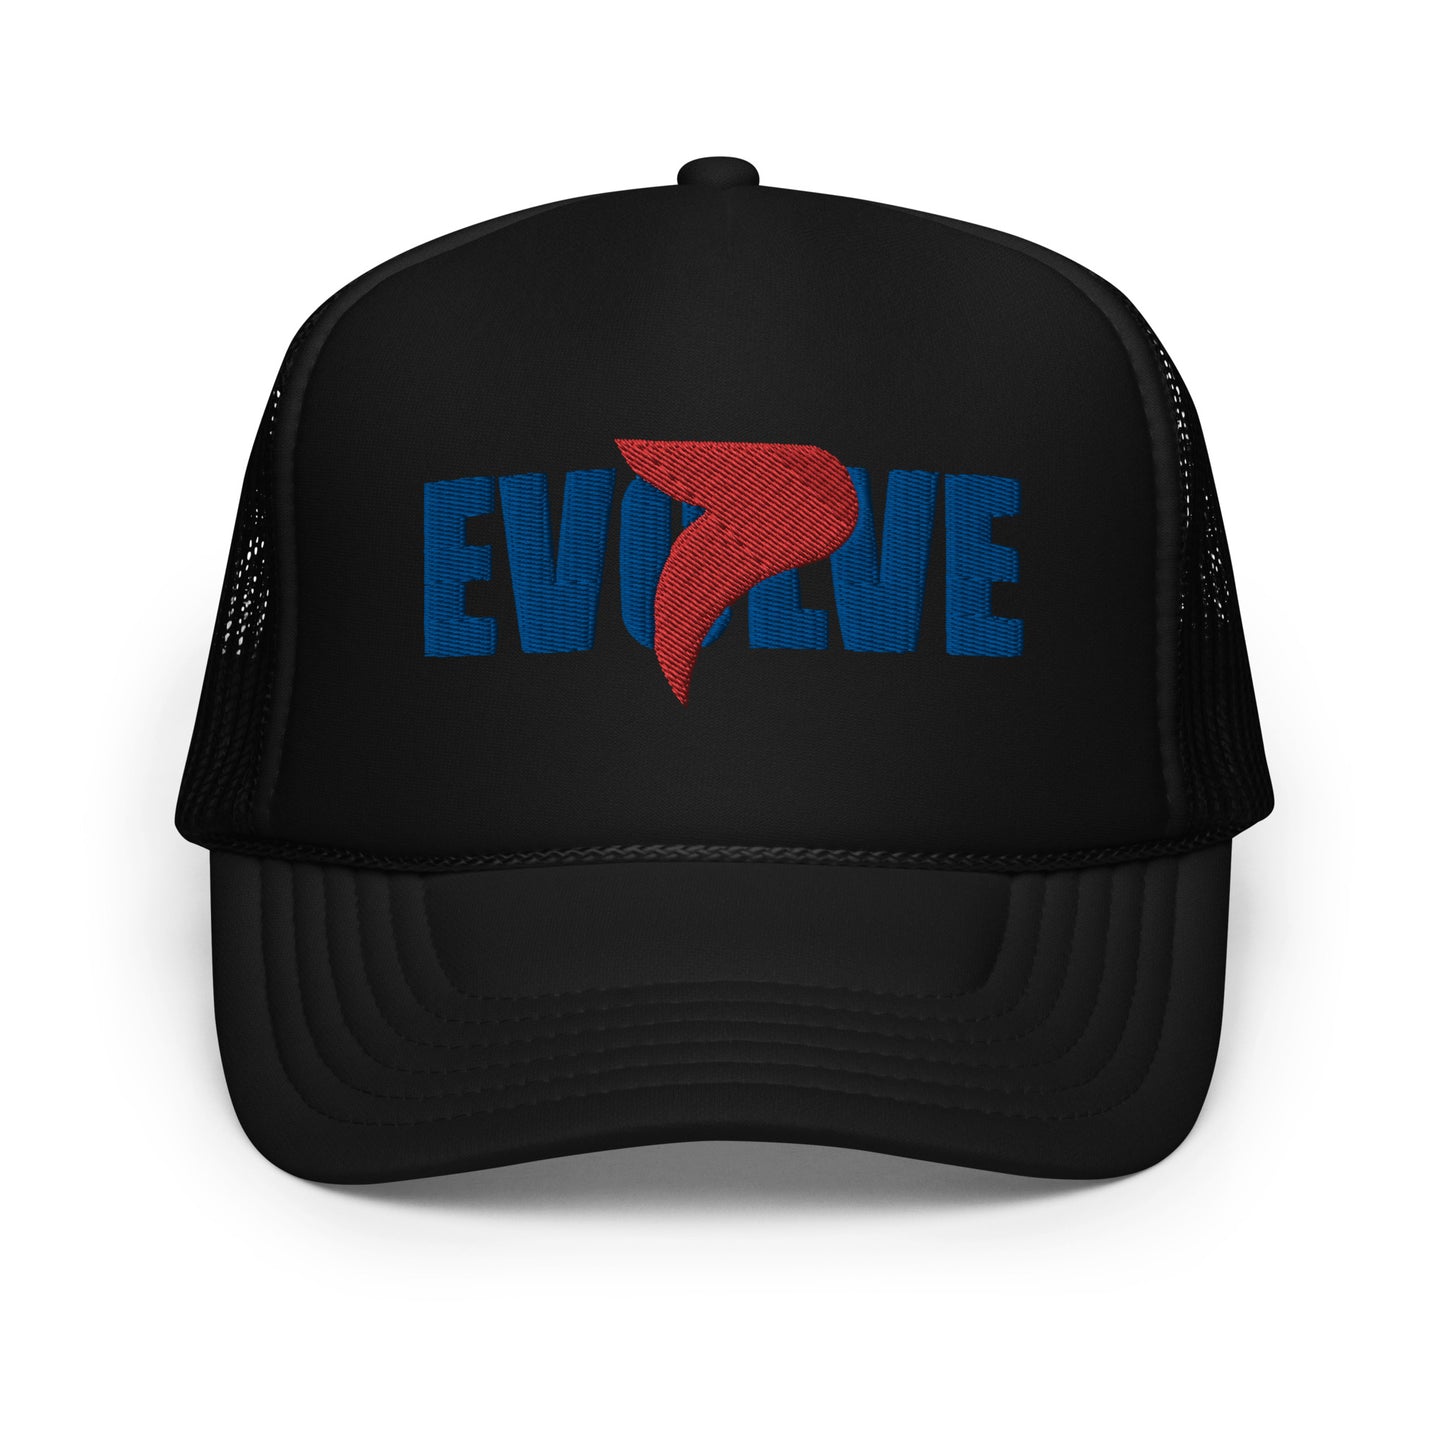 EVOLVE Trucker Hat